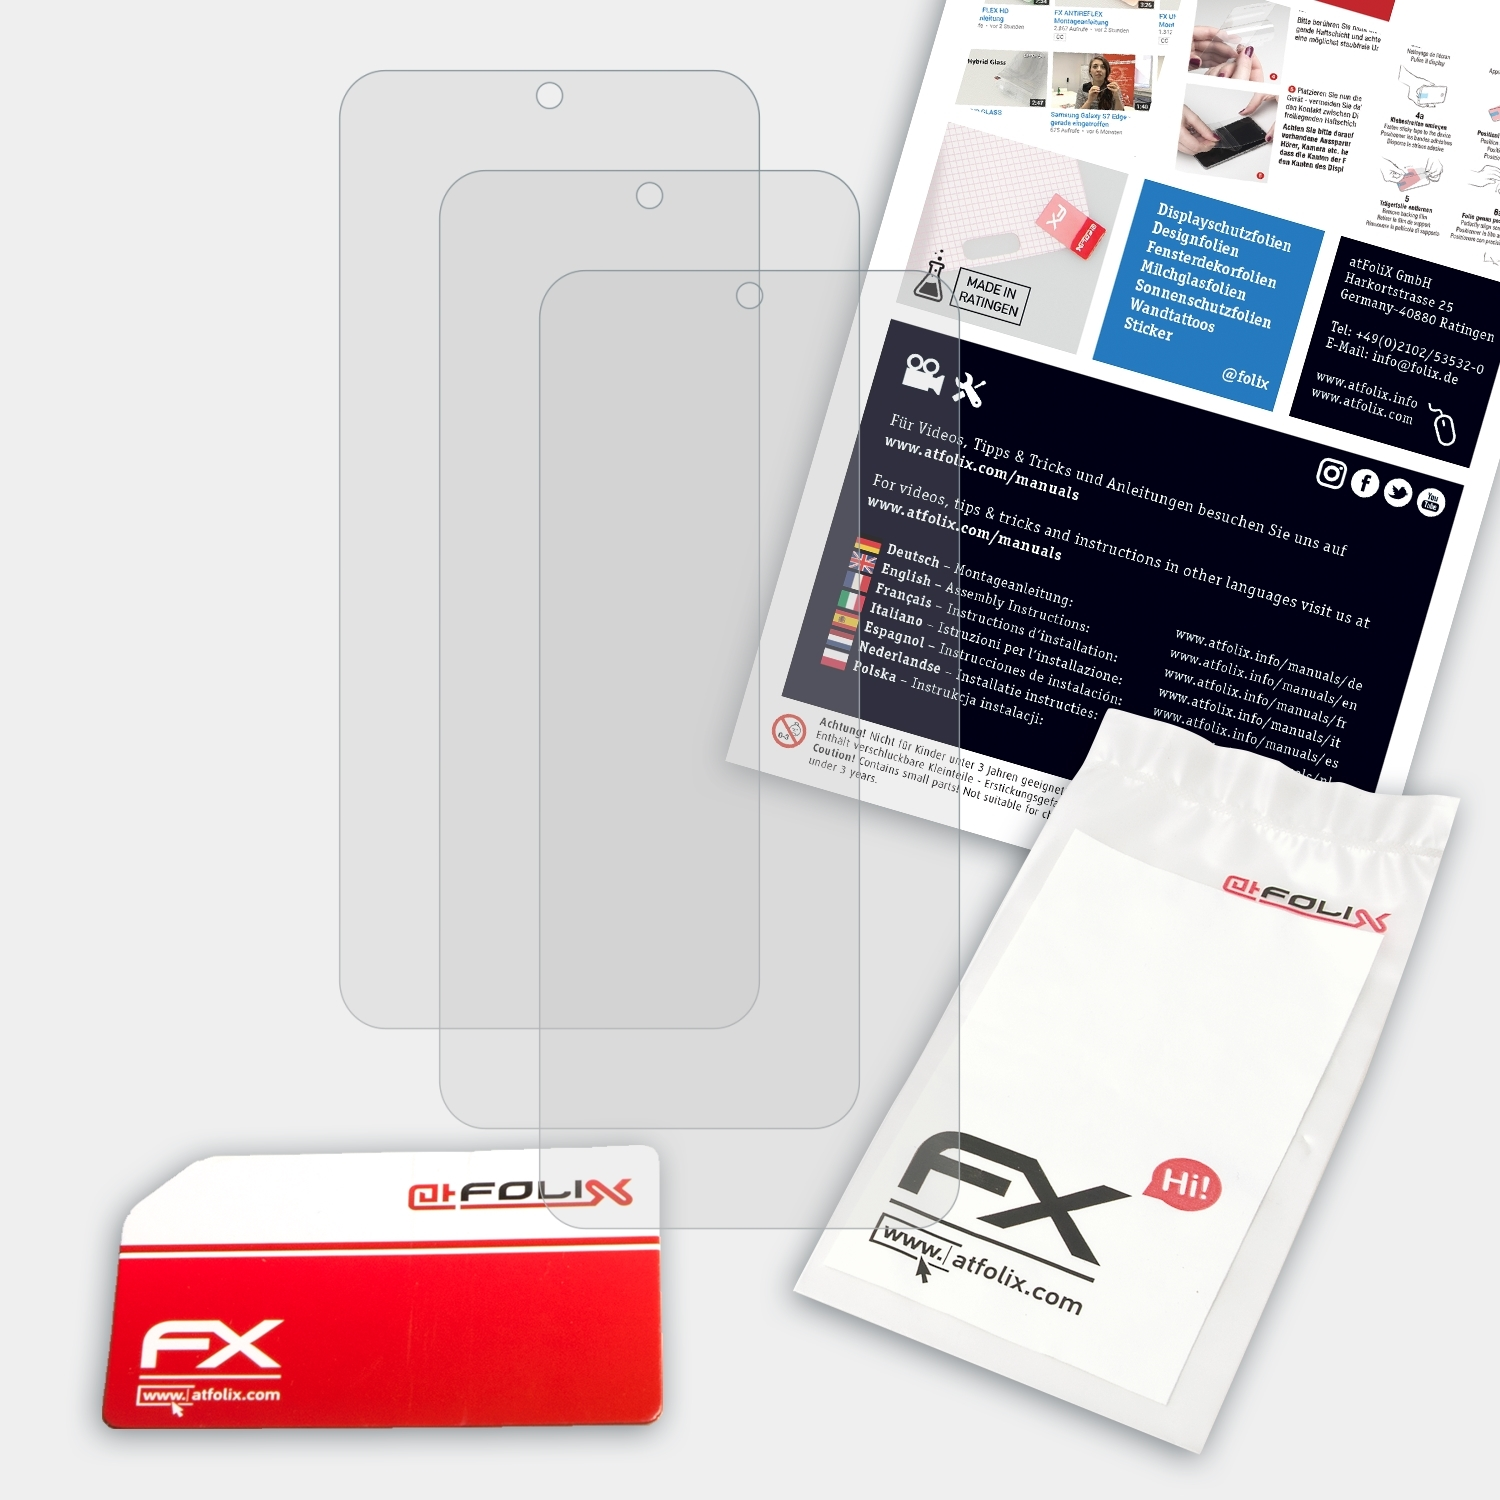 ATFOLIX 3x FX-Antireflex Displayschutz(für Note Xiaomi Redmi 9S)